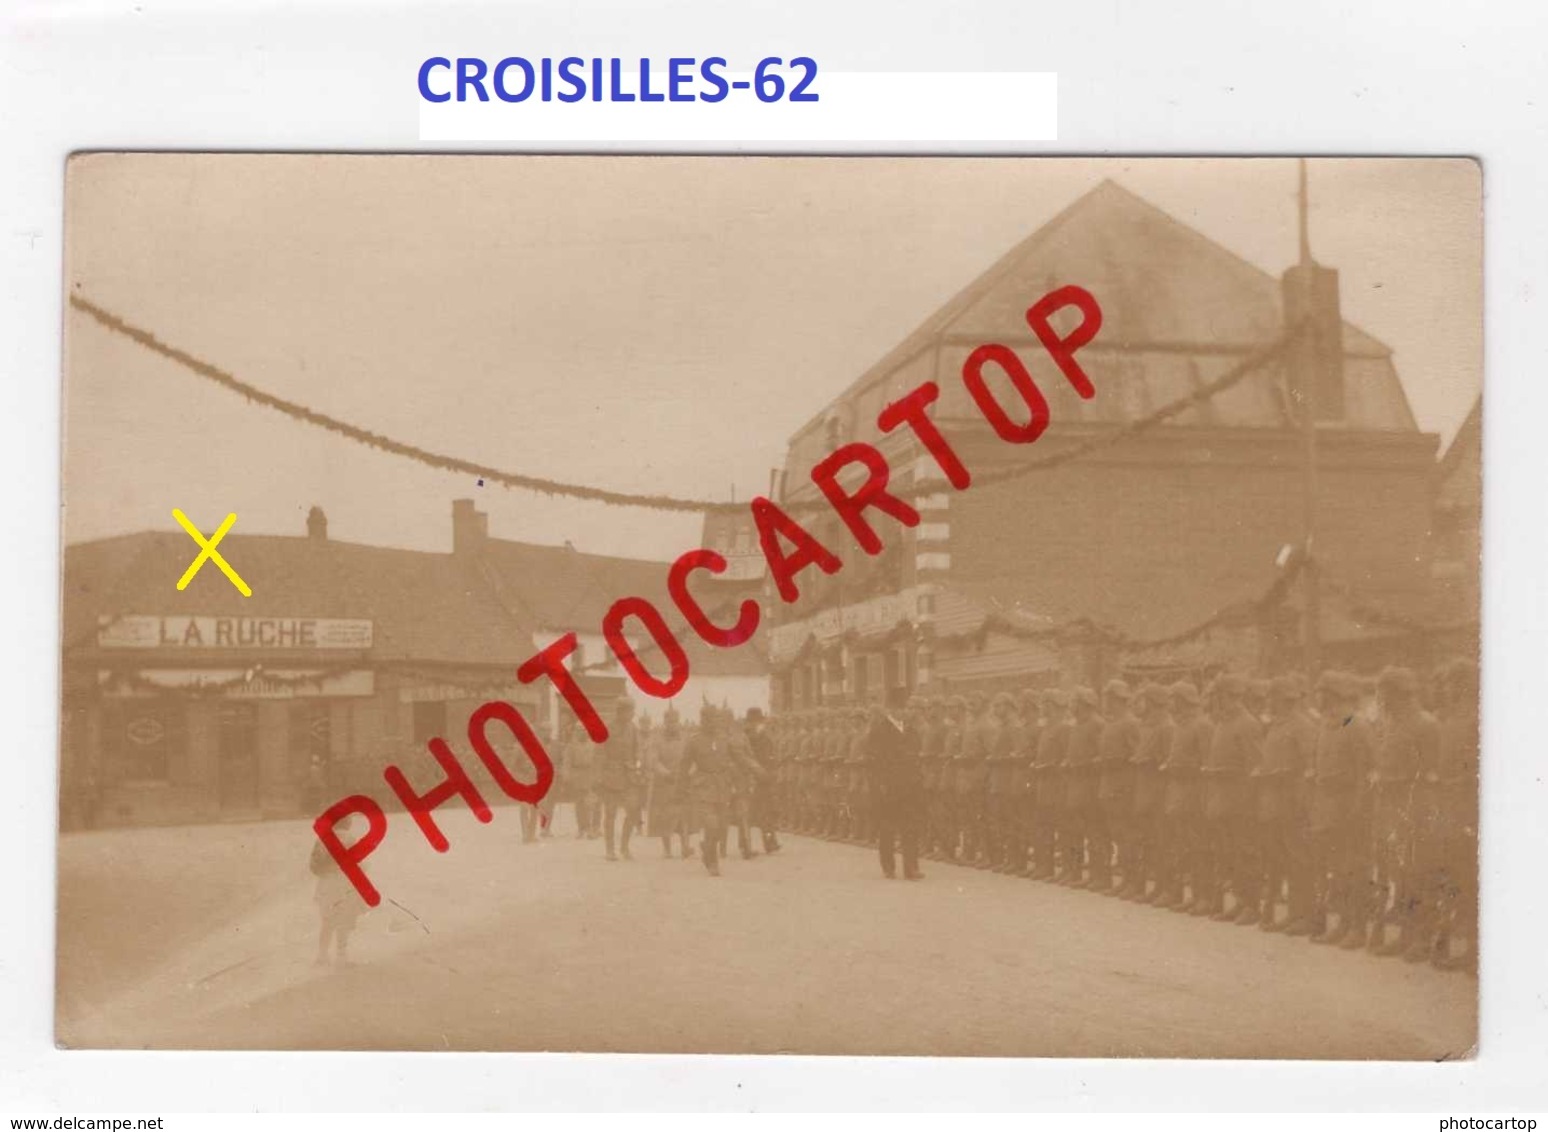 CROISILLES-Magasin LA RUCHE-Revue Militaire-CARTE PHOTO Allemande-GUERRE 14-18-1 WK-FRANCE-62- - Croisilles